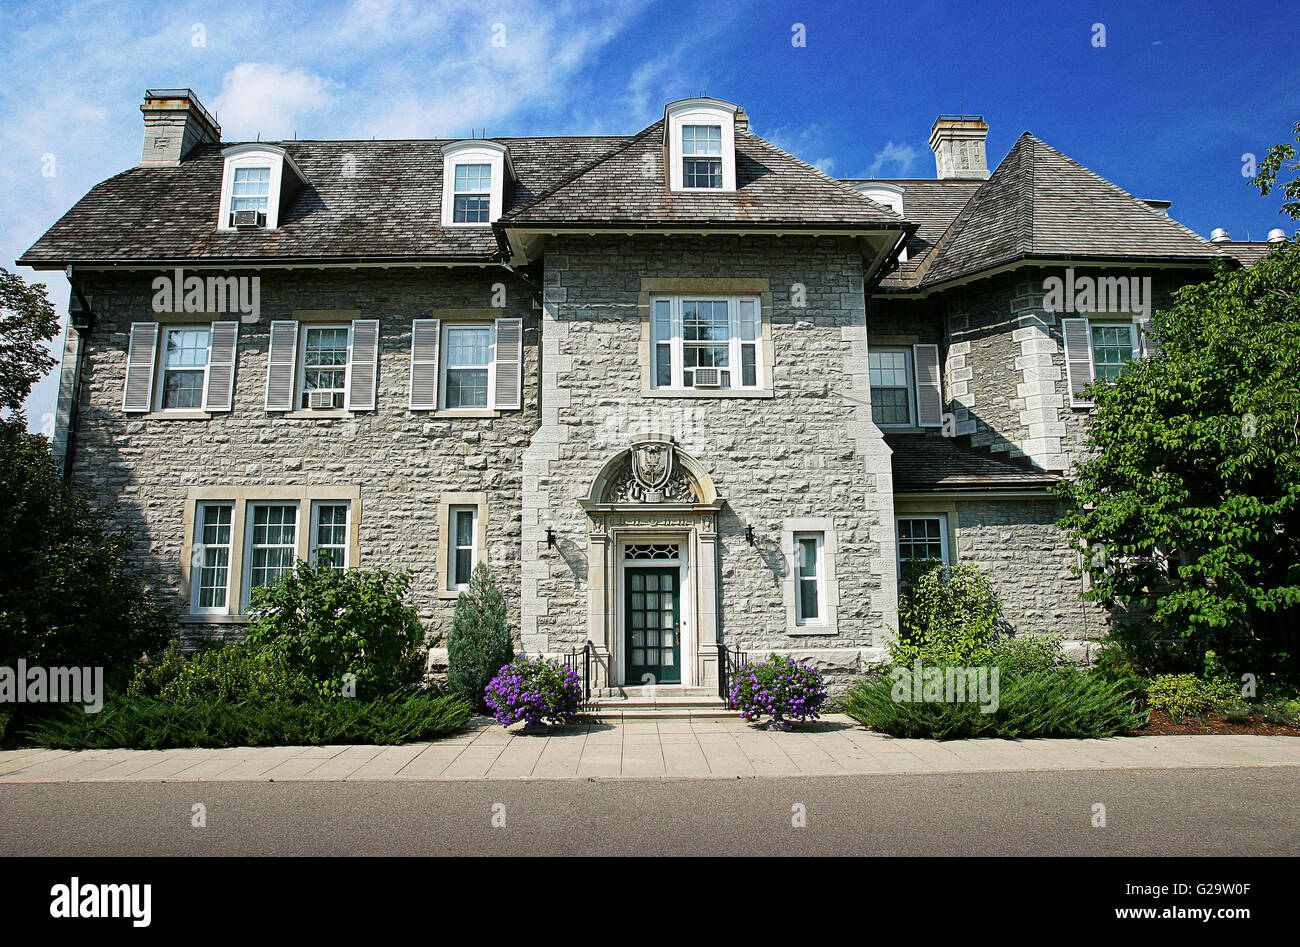 24 Sussex Drive, die offizielle Residenz des Premierministers von Kanada. Stockfoto